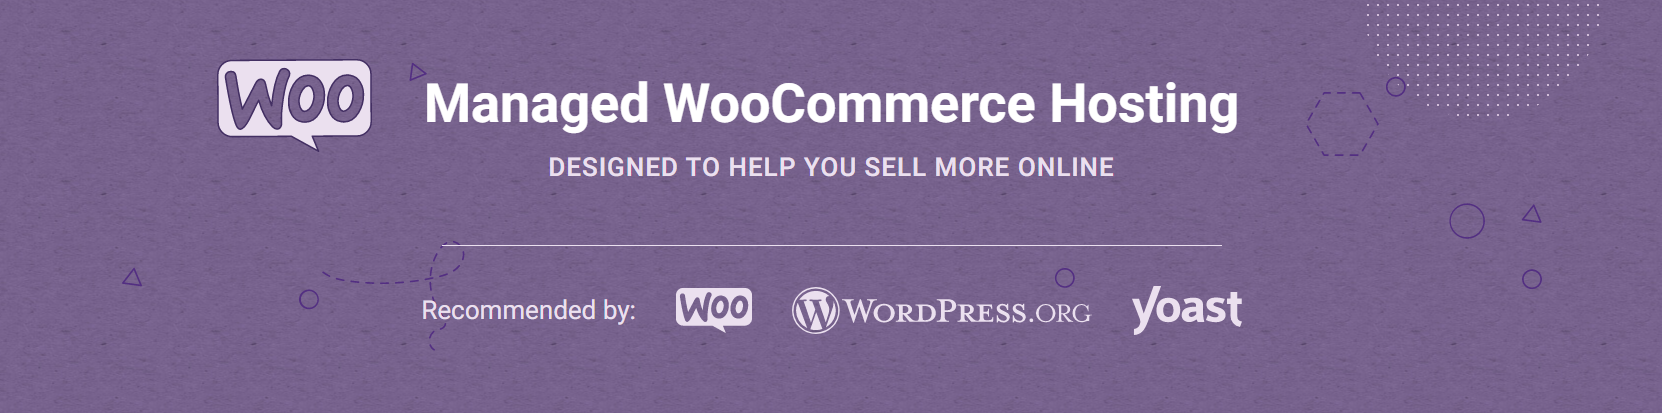 SiteGround - WooCommerce Hosting 2021